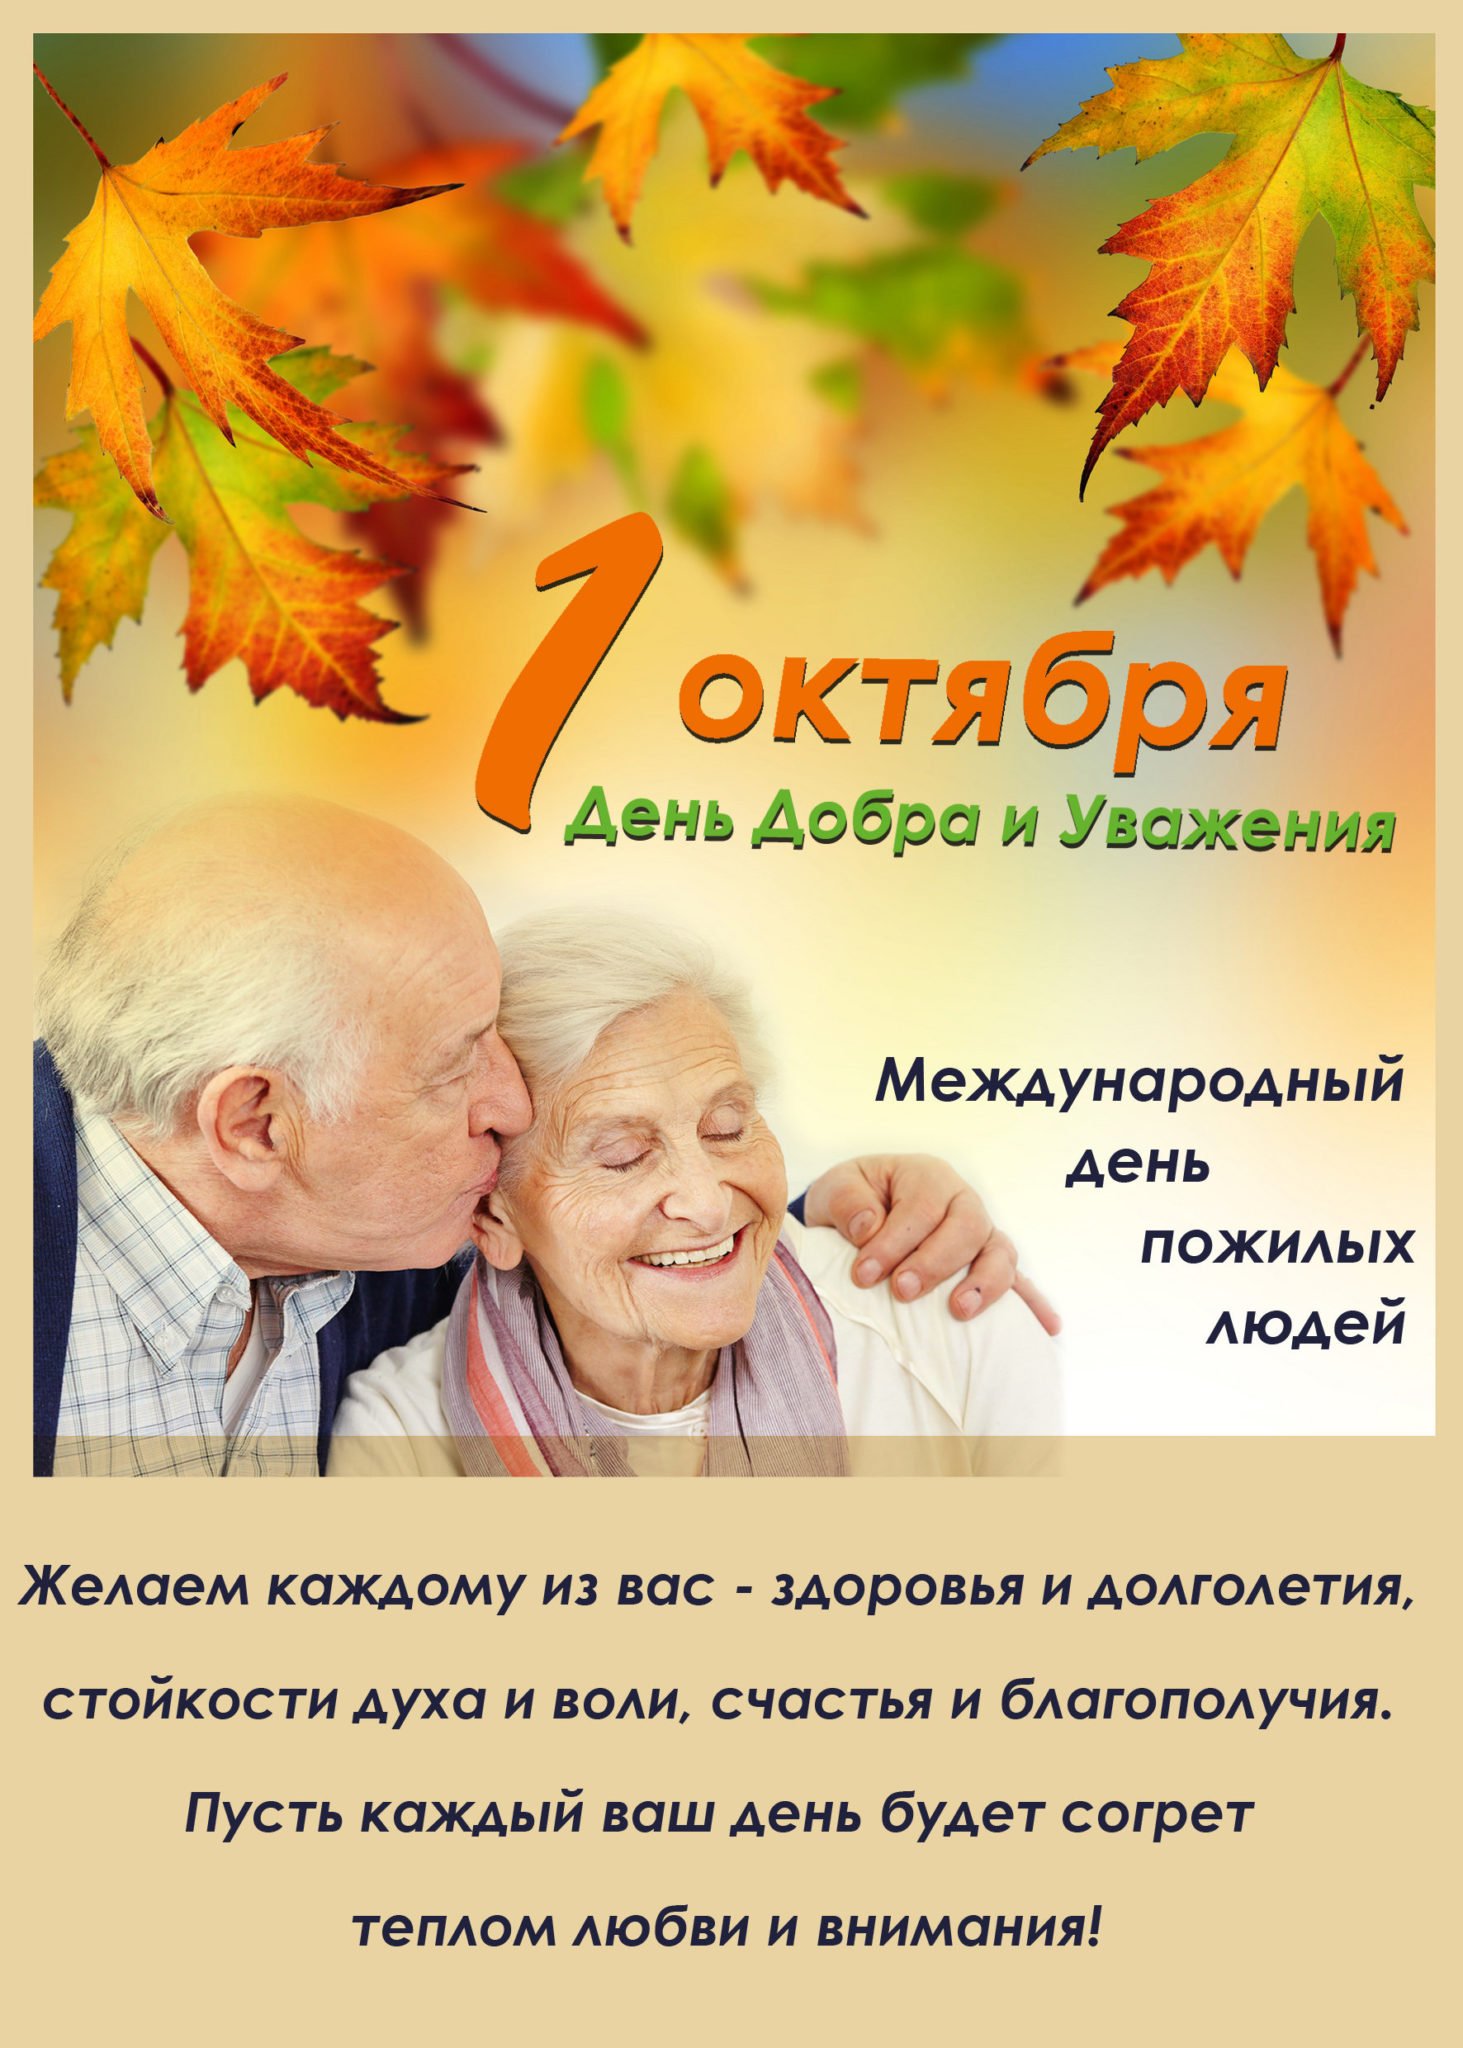 1 Октября-Международный день пожилых людей.